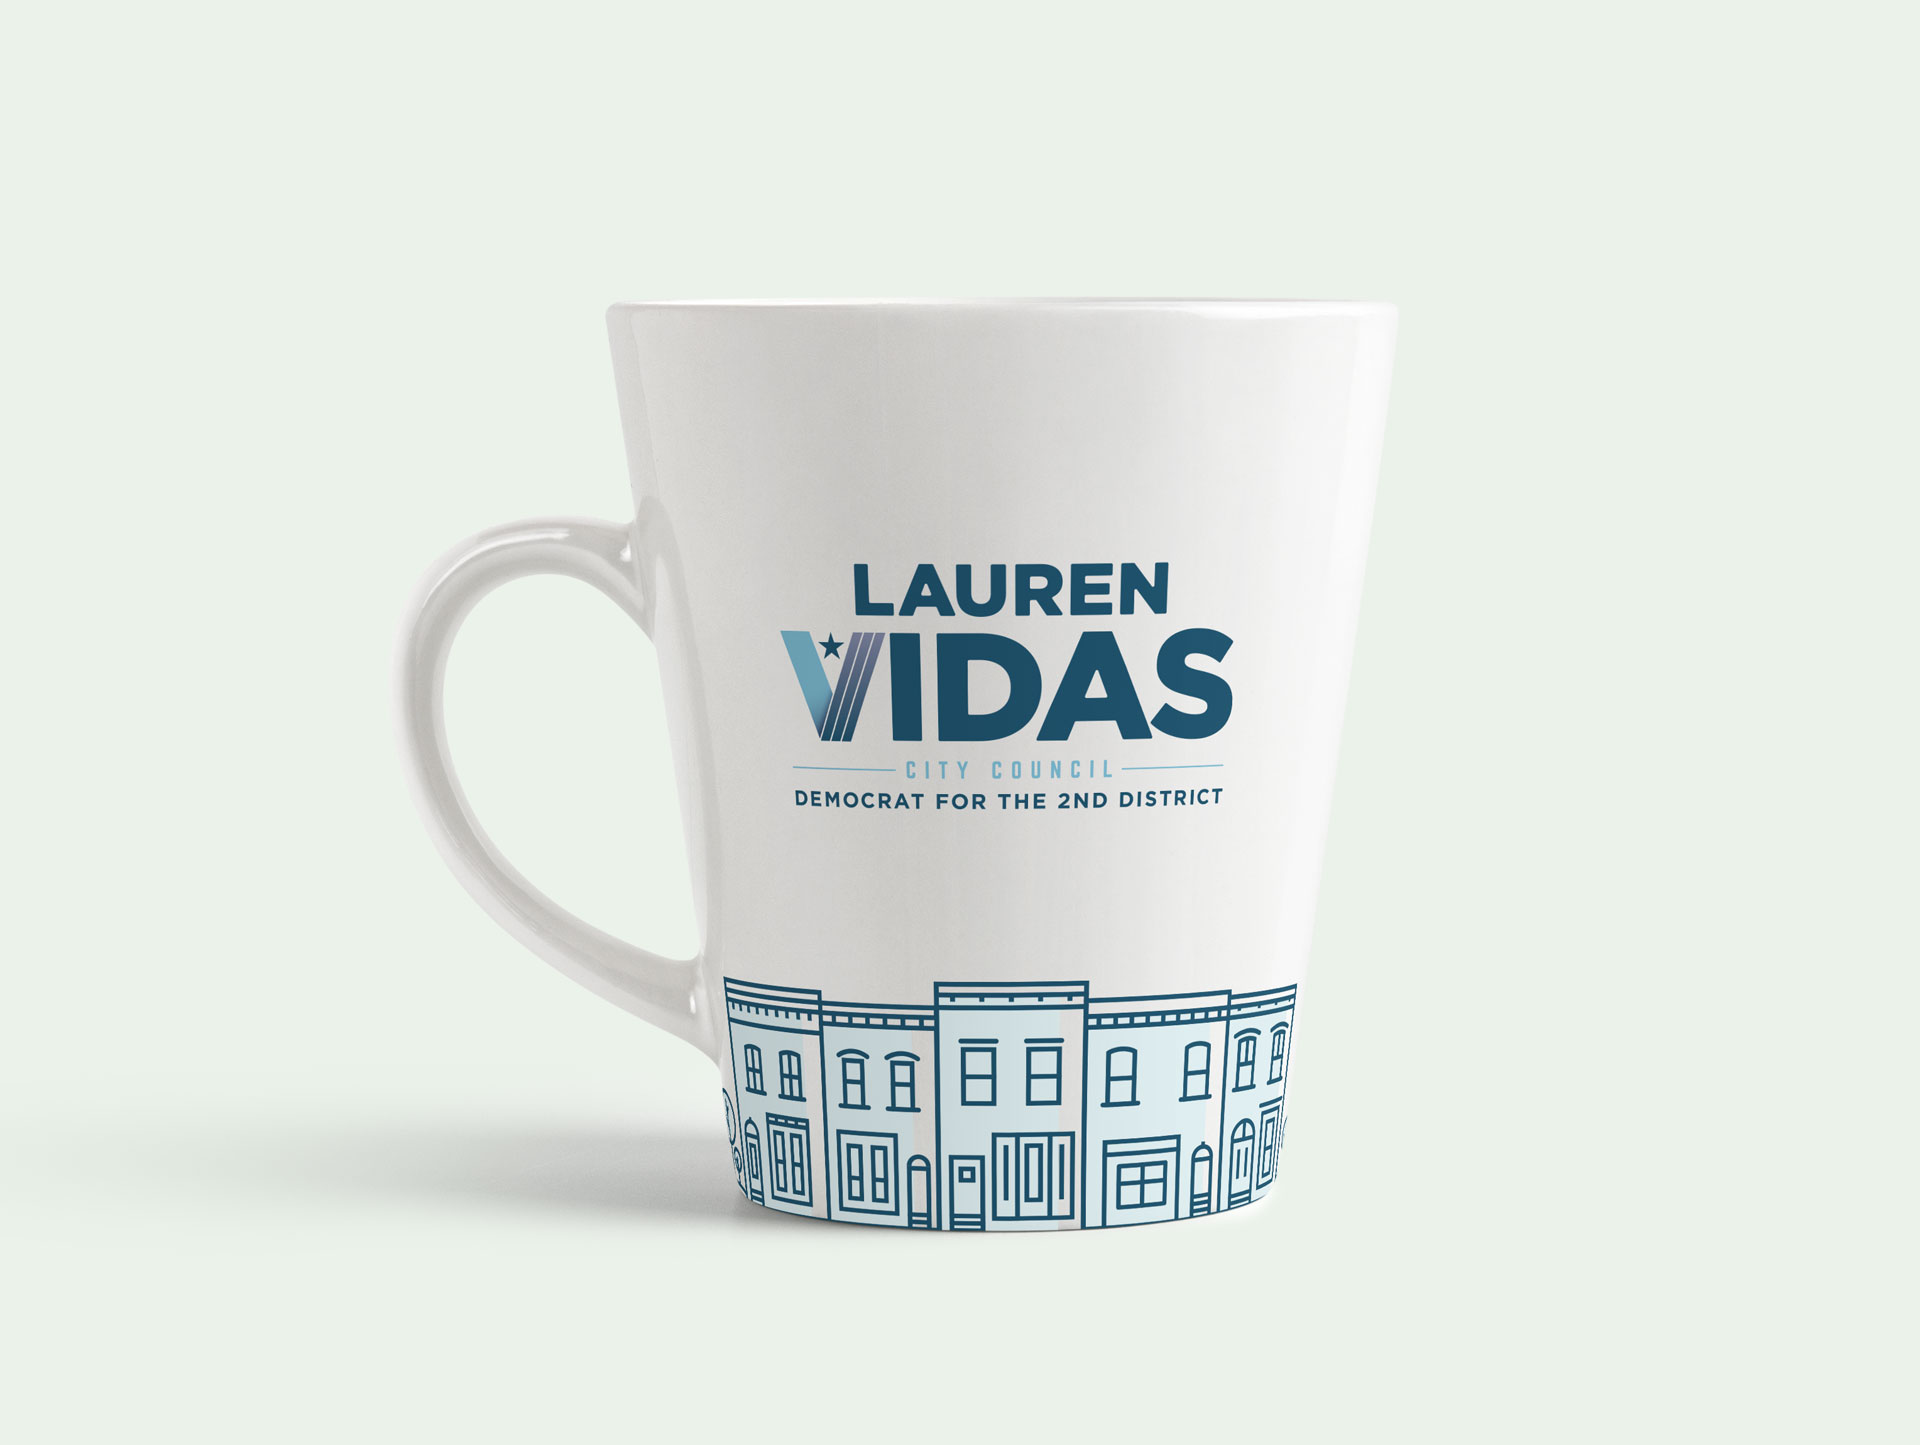 Lauren Vidas - Campaign Branding